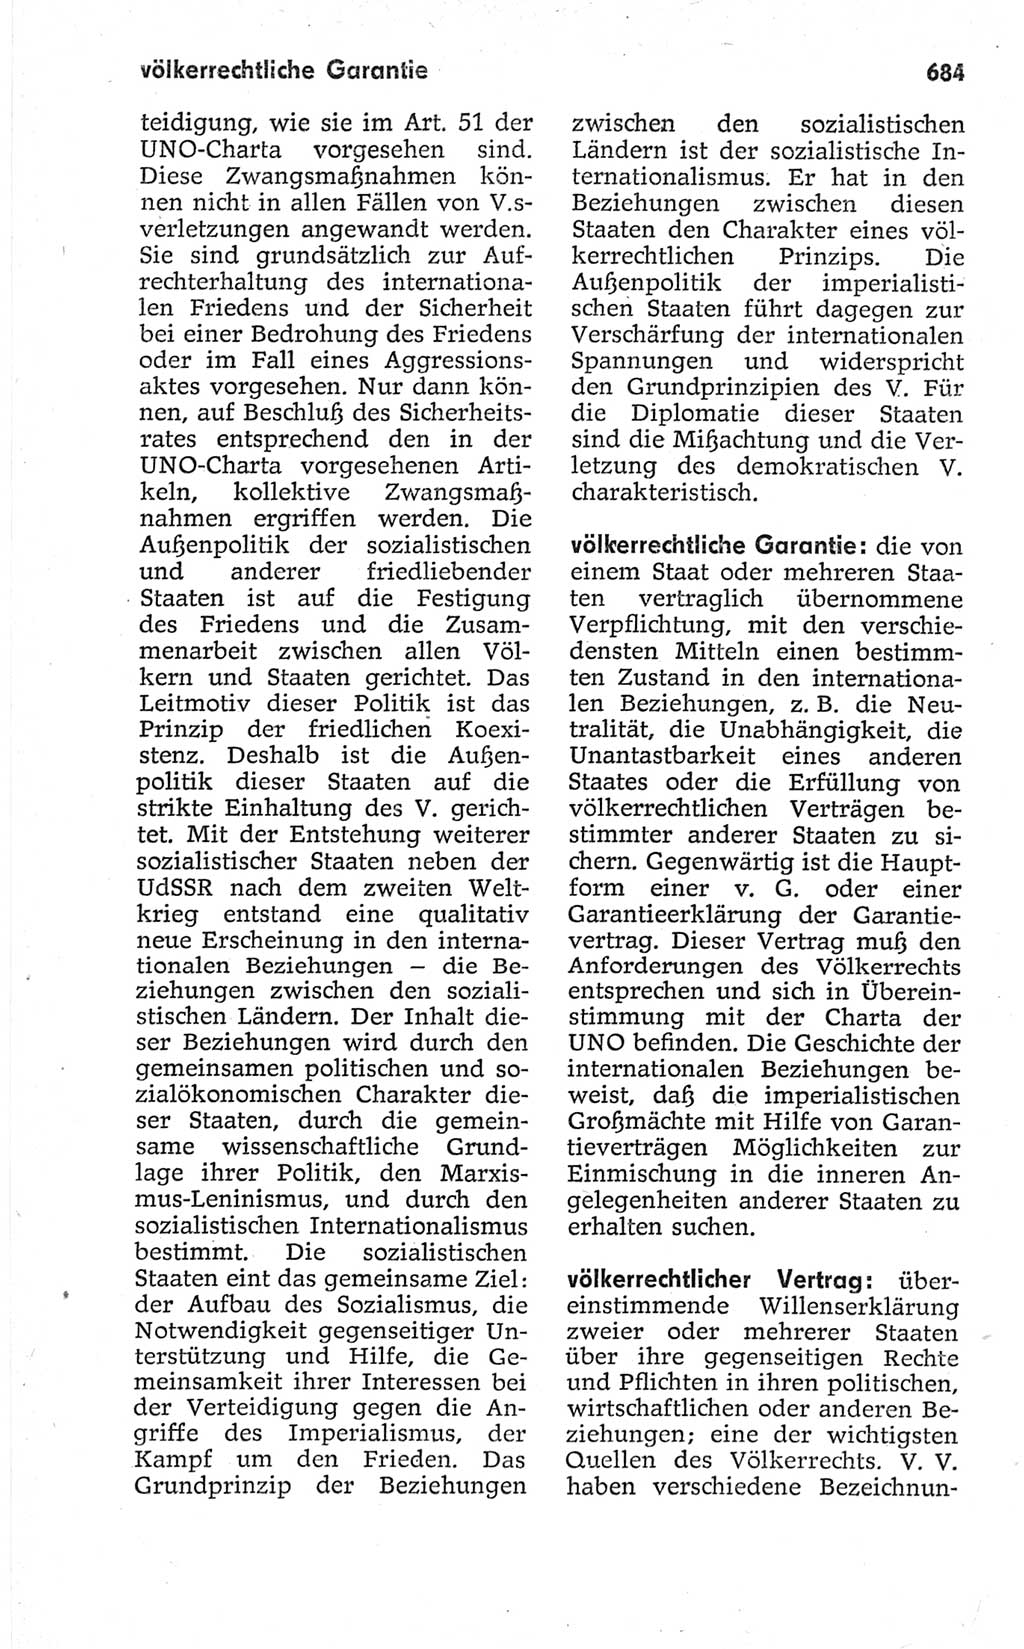 Kleines politisches Wörterbuch [Deutsche Demokratische Republik (DDR)] 1967, Seite 684 (Kl. pol. Wb. DDR 1967, S. 684)